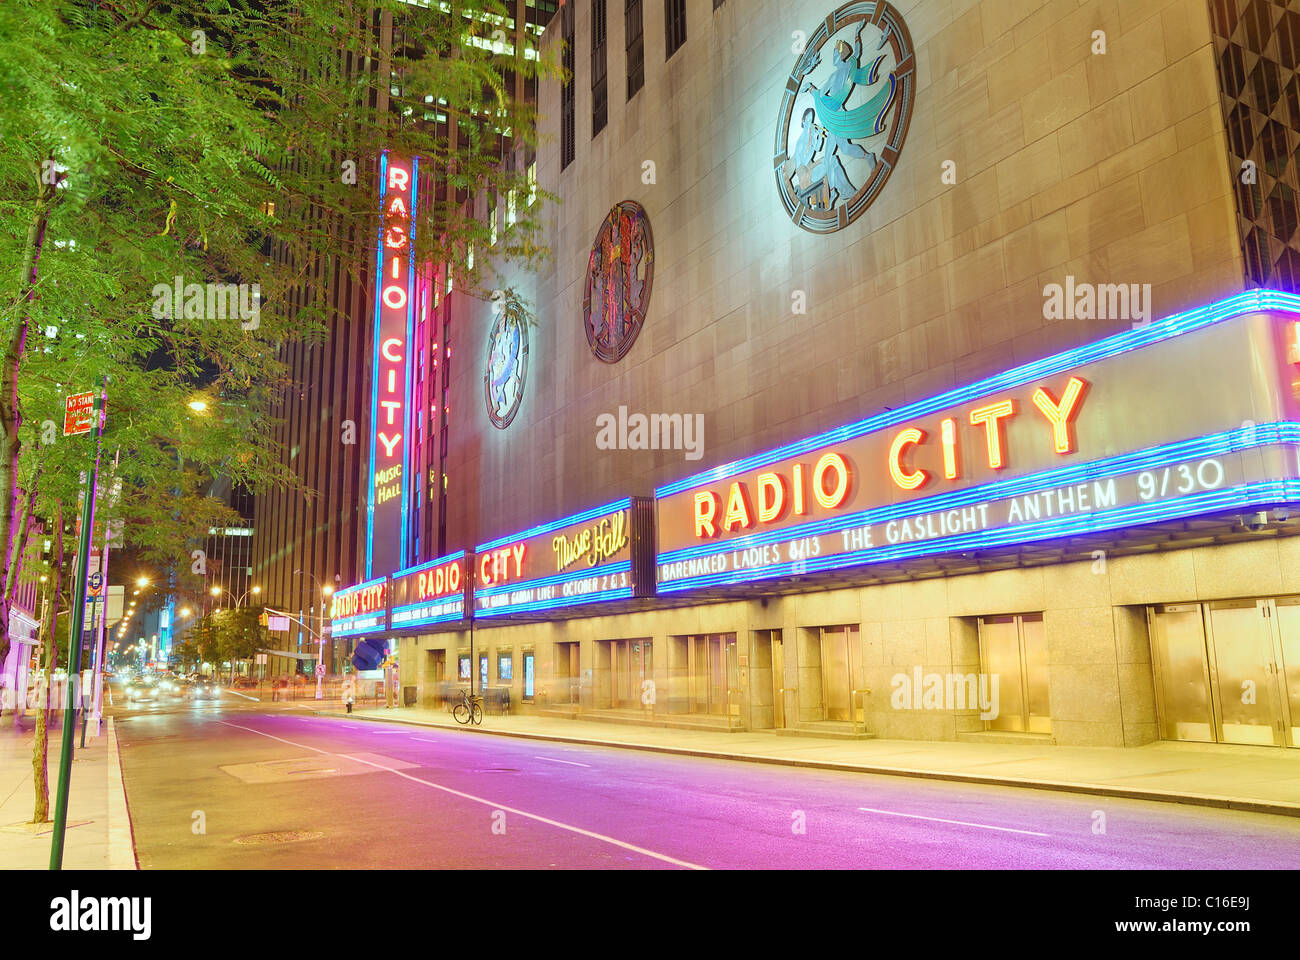 Radio City Music Hall, situé dans le Rockefeller Center de Manhattan, son intérieur a été déclaré un monument de la ville en 1978, la ville de New York Banque D'Images